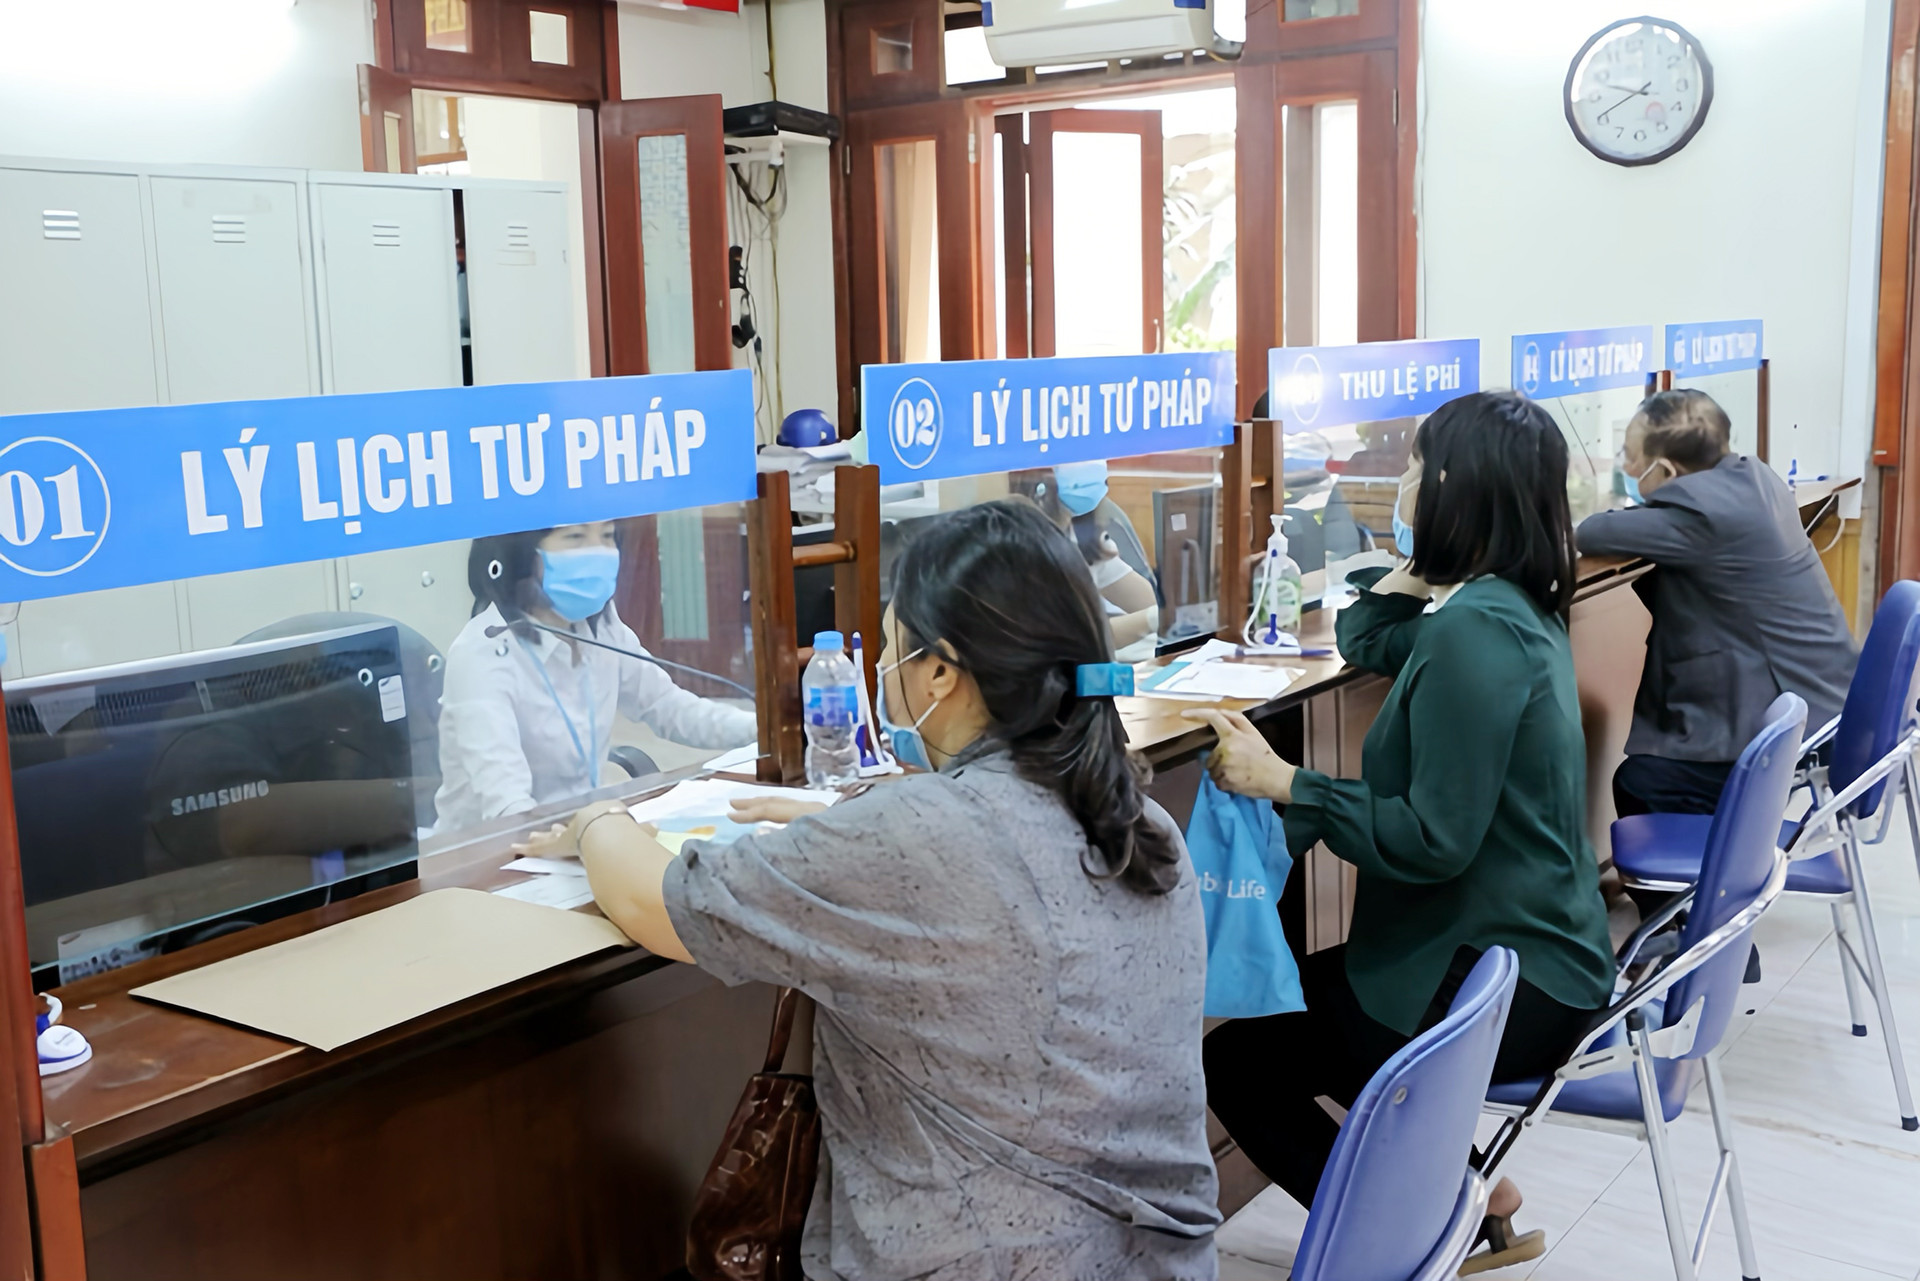 Hà Nội, Huế chính thức thí điểm cấp phiếu lý lịch tư pháp trên VNeID